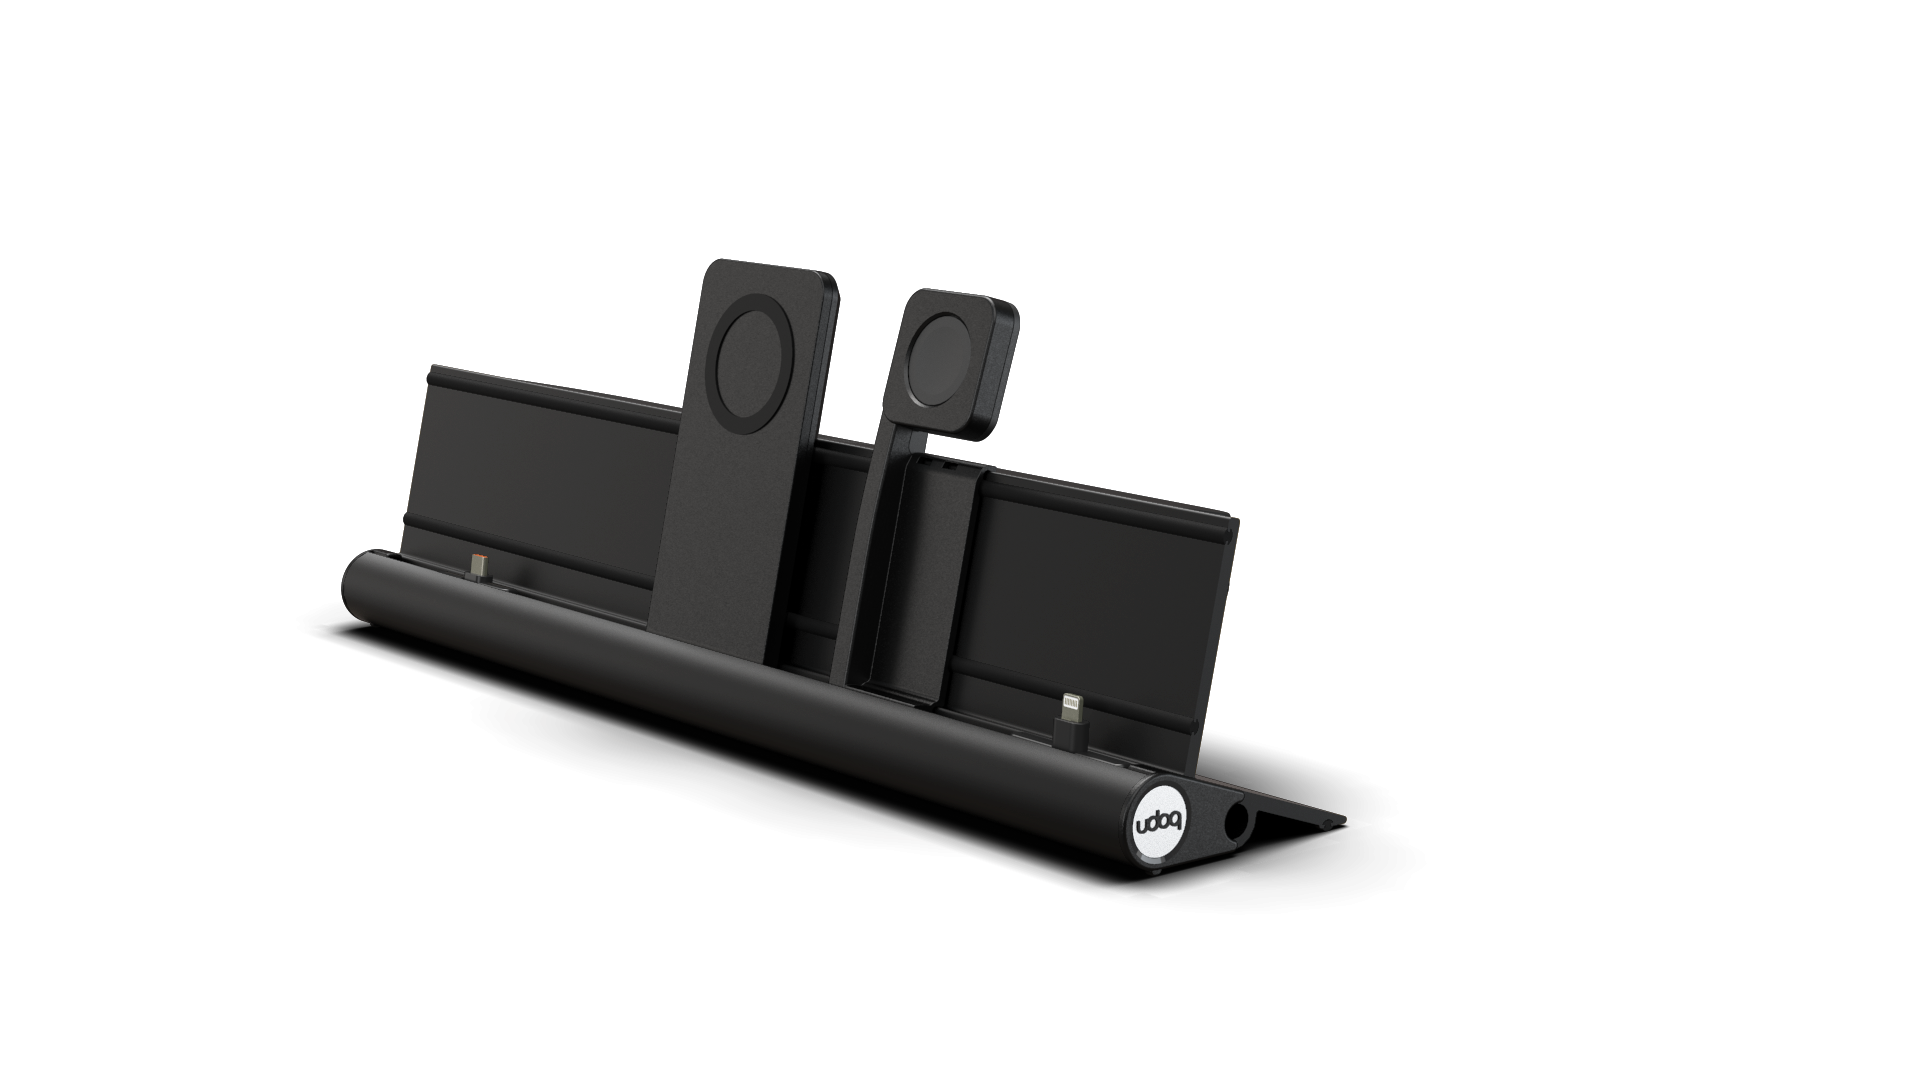 udoq Station de recharge multiple 400 en noir avec chargeur MagSafe et Power Delivery, Apple Watch adaptateur